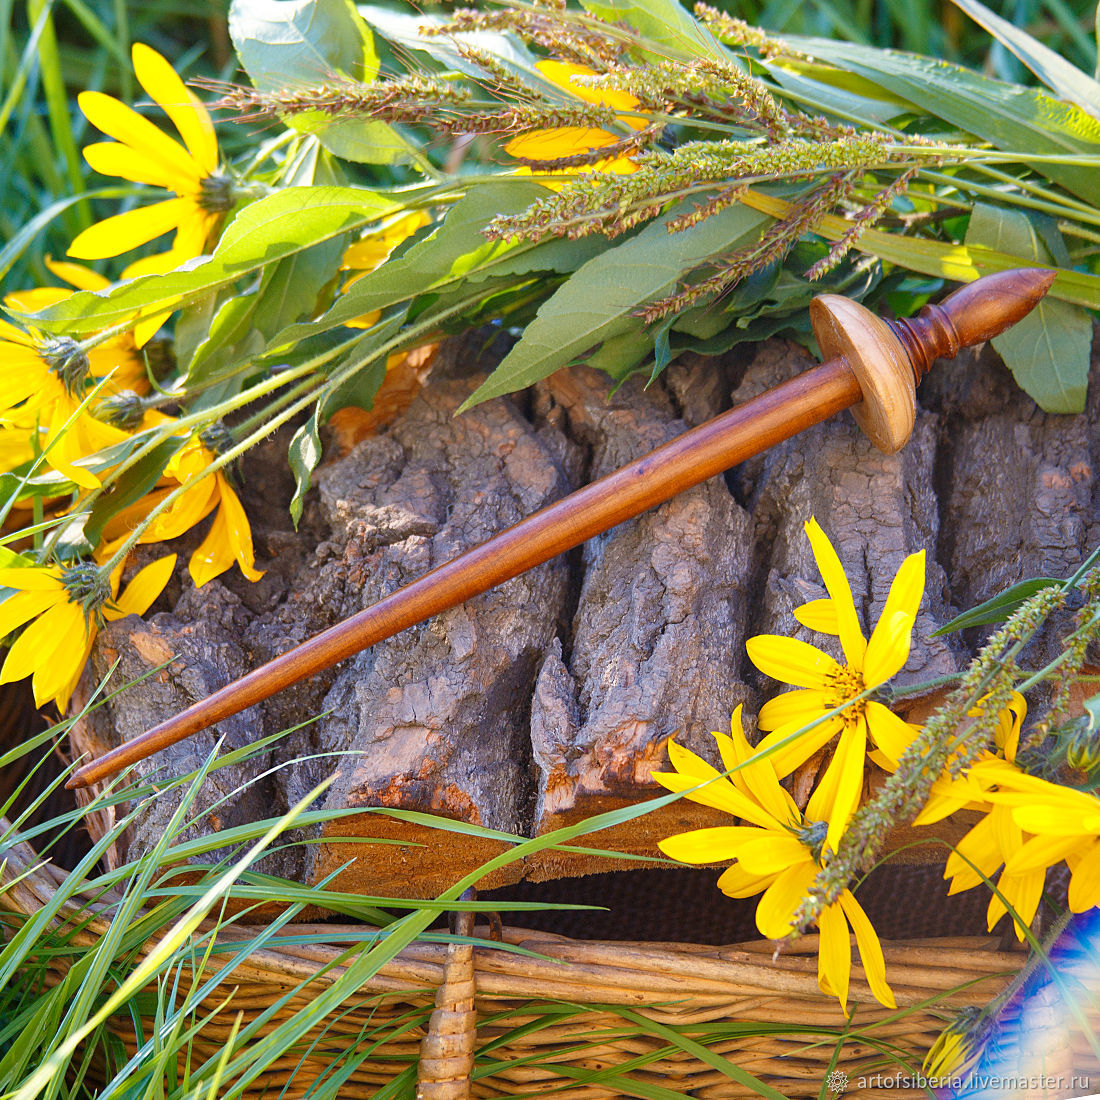 Деревянное тибетское веретено для прядение из древесины вишни. B33